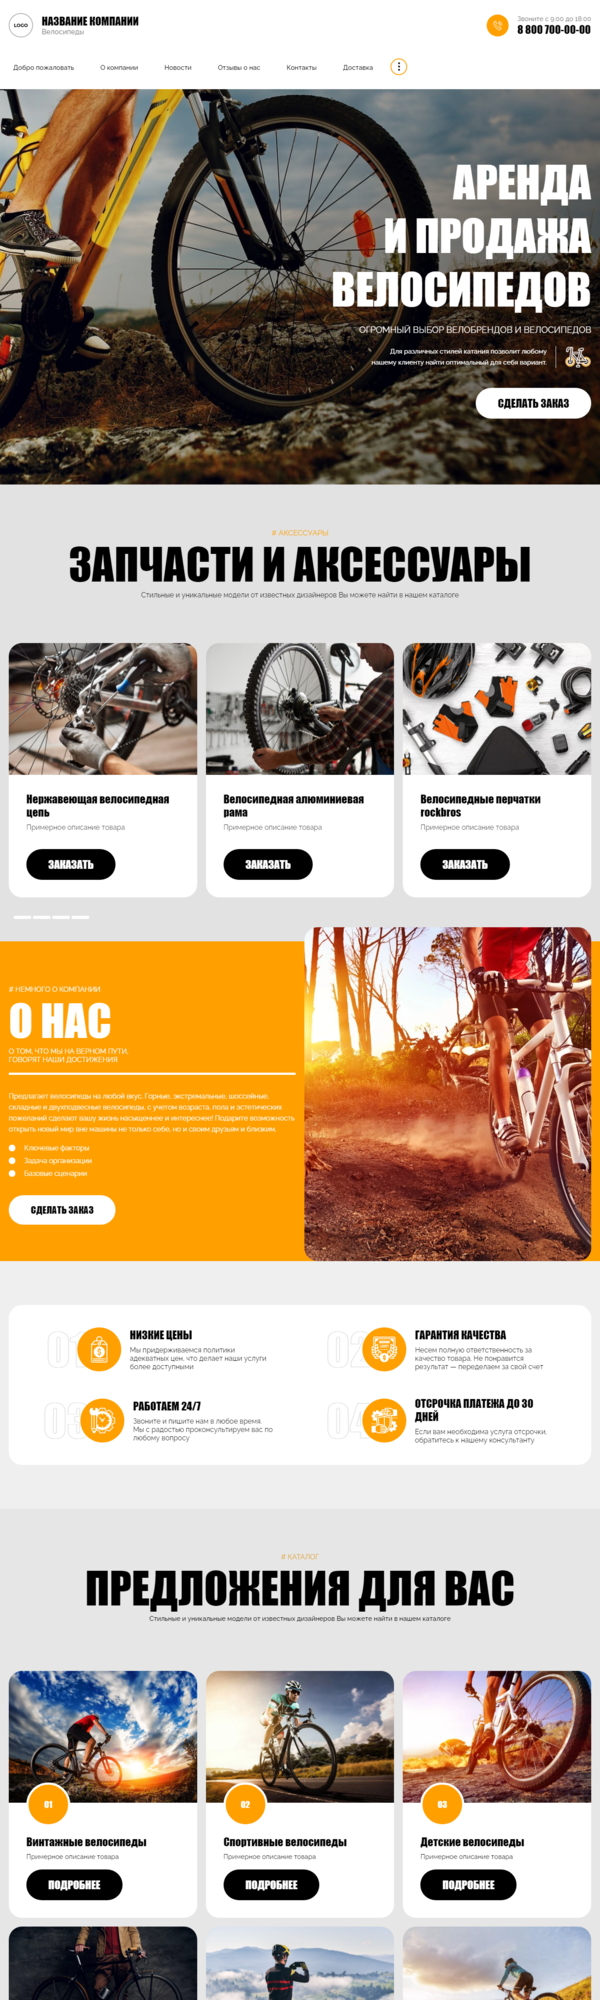 Готовый Сайт-Бизнес № 3667459 - Велосипеды (Десктопная версия)